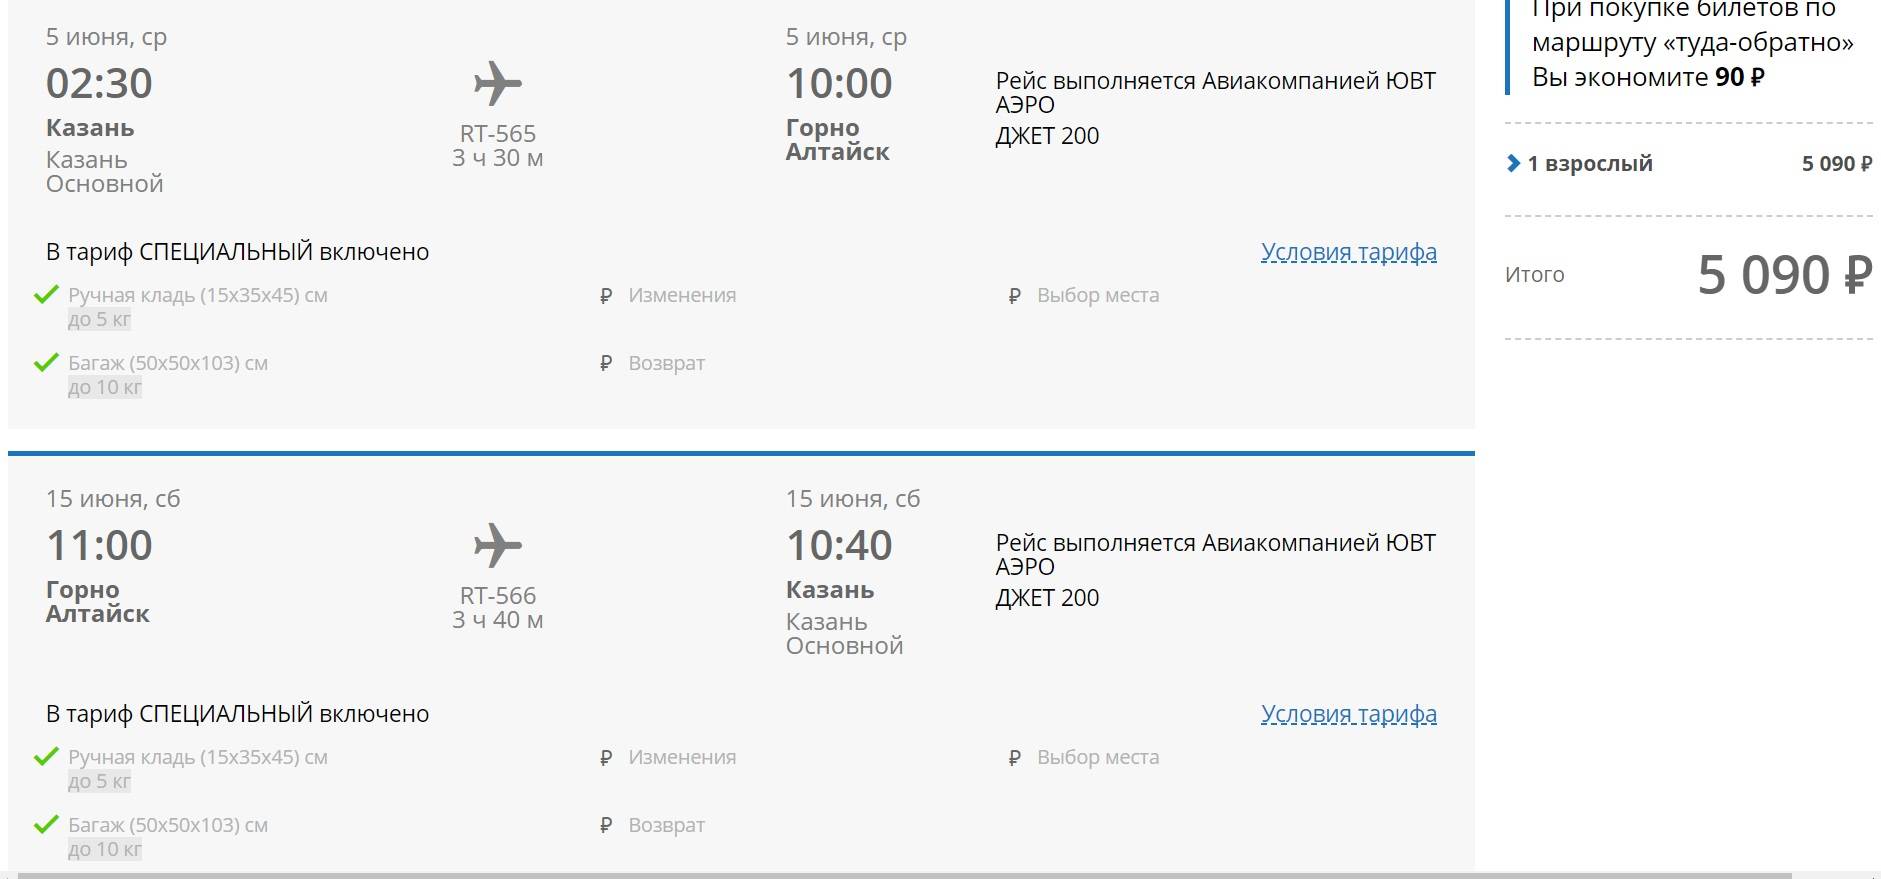 Авиакомпания «ираэро»: приобретение электронного билета, регистрация на рейс, провоз багажа, отзывы пассажиров